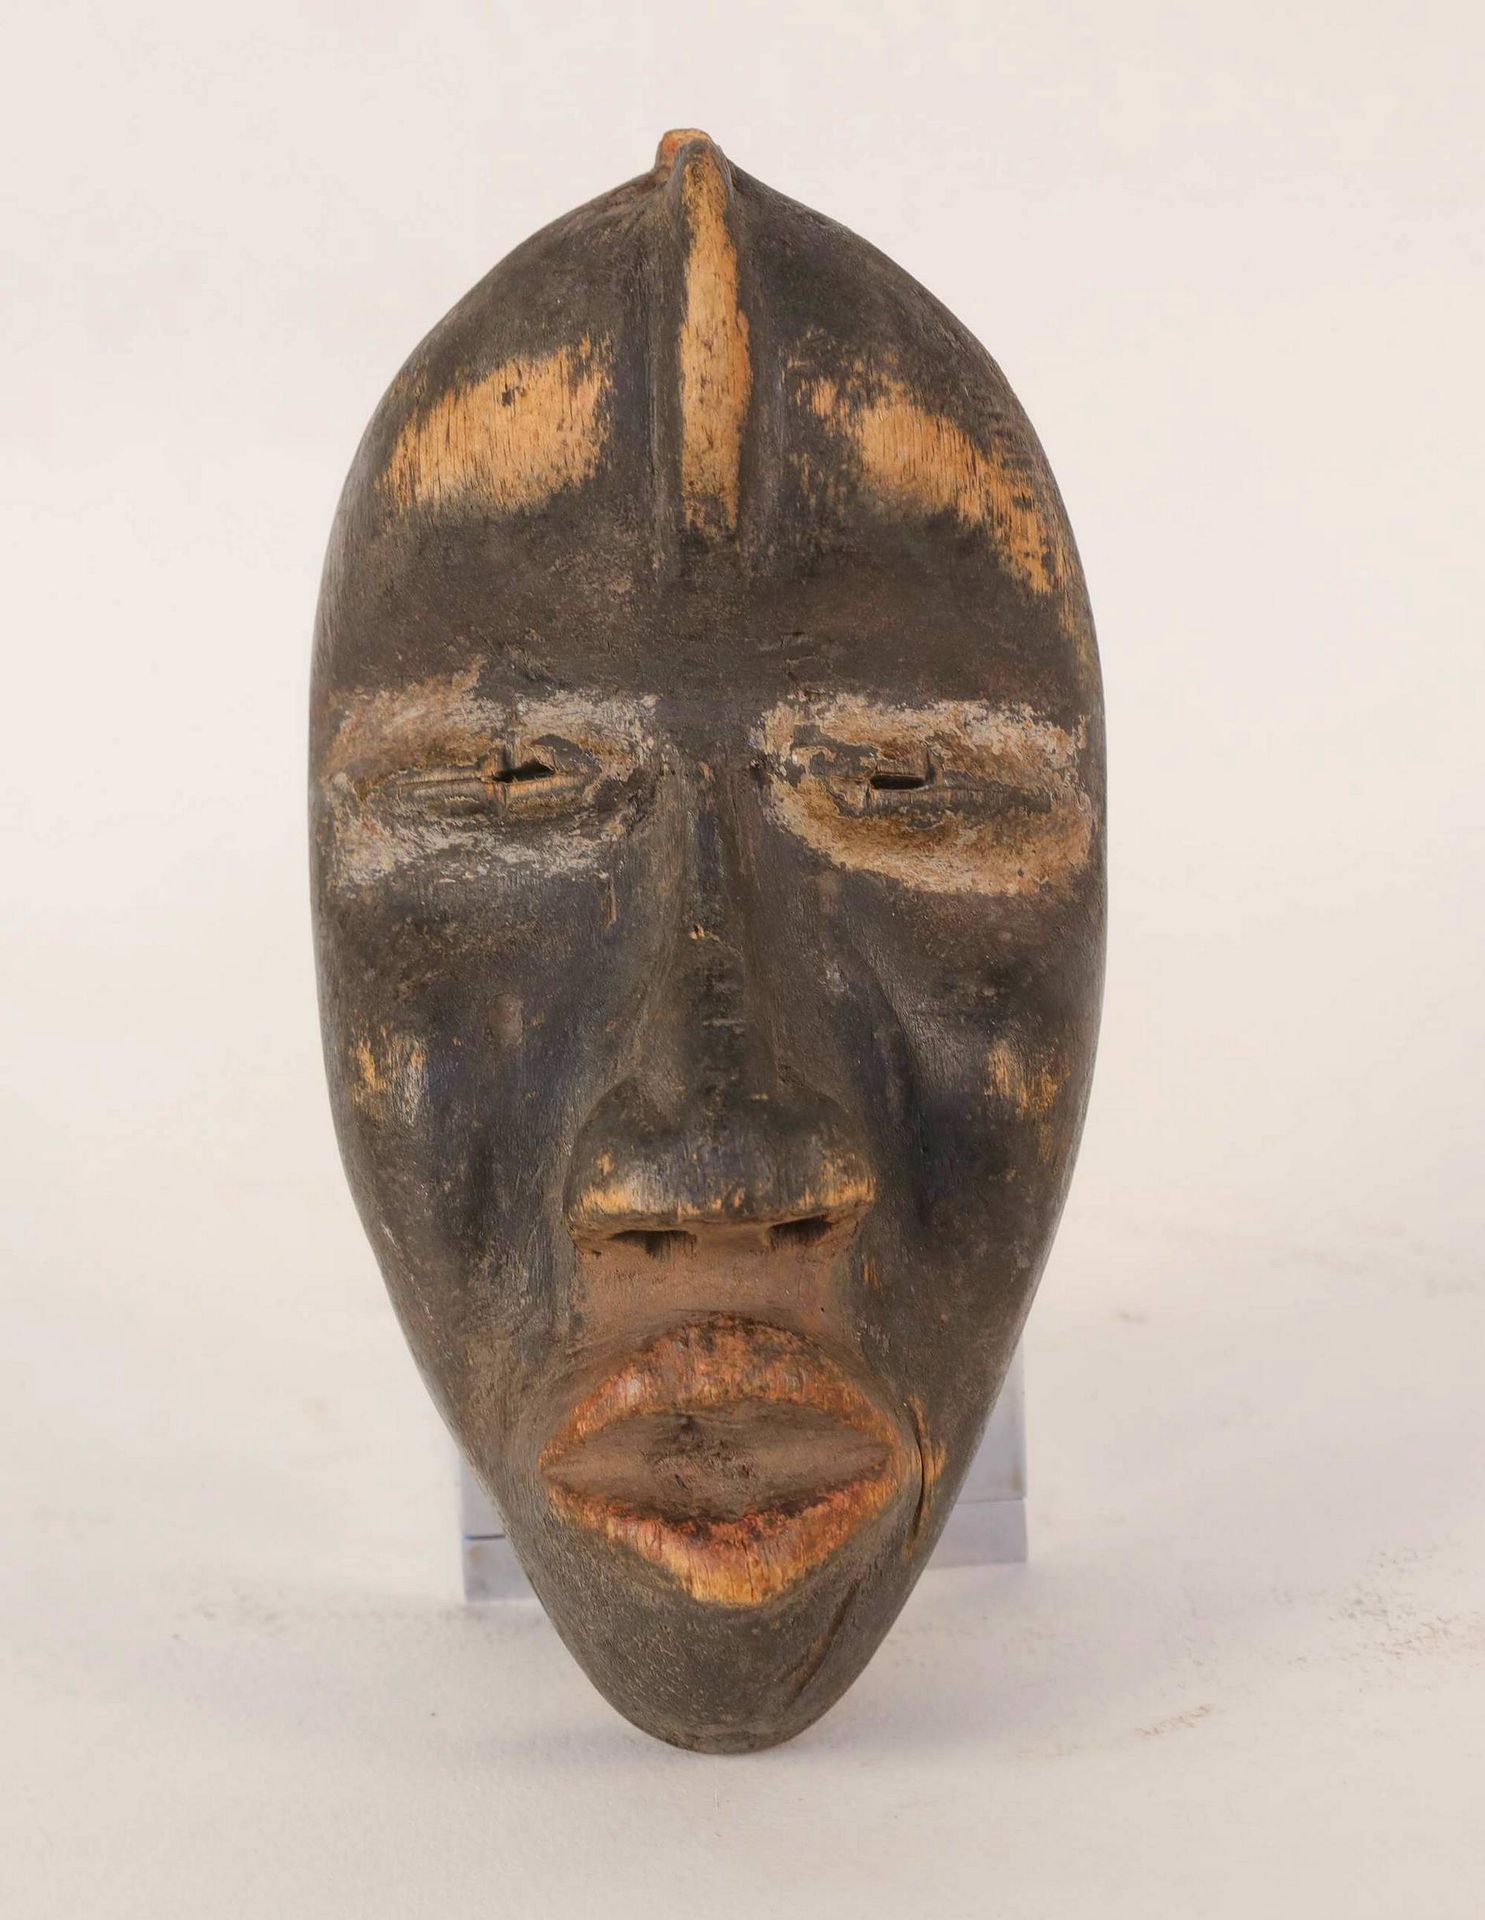 Null DAN, Costa d'Avorio. Maschera di legno con una patina nera, il viso è ovale&hellip;